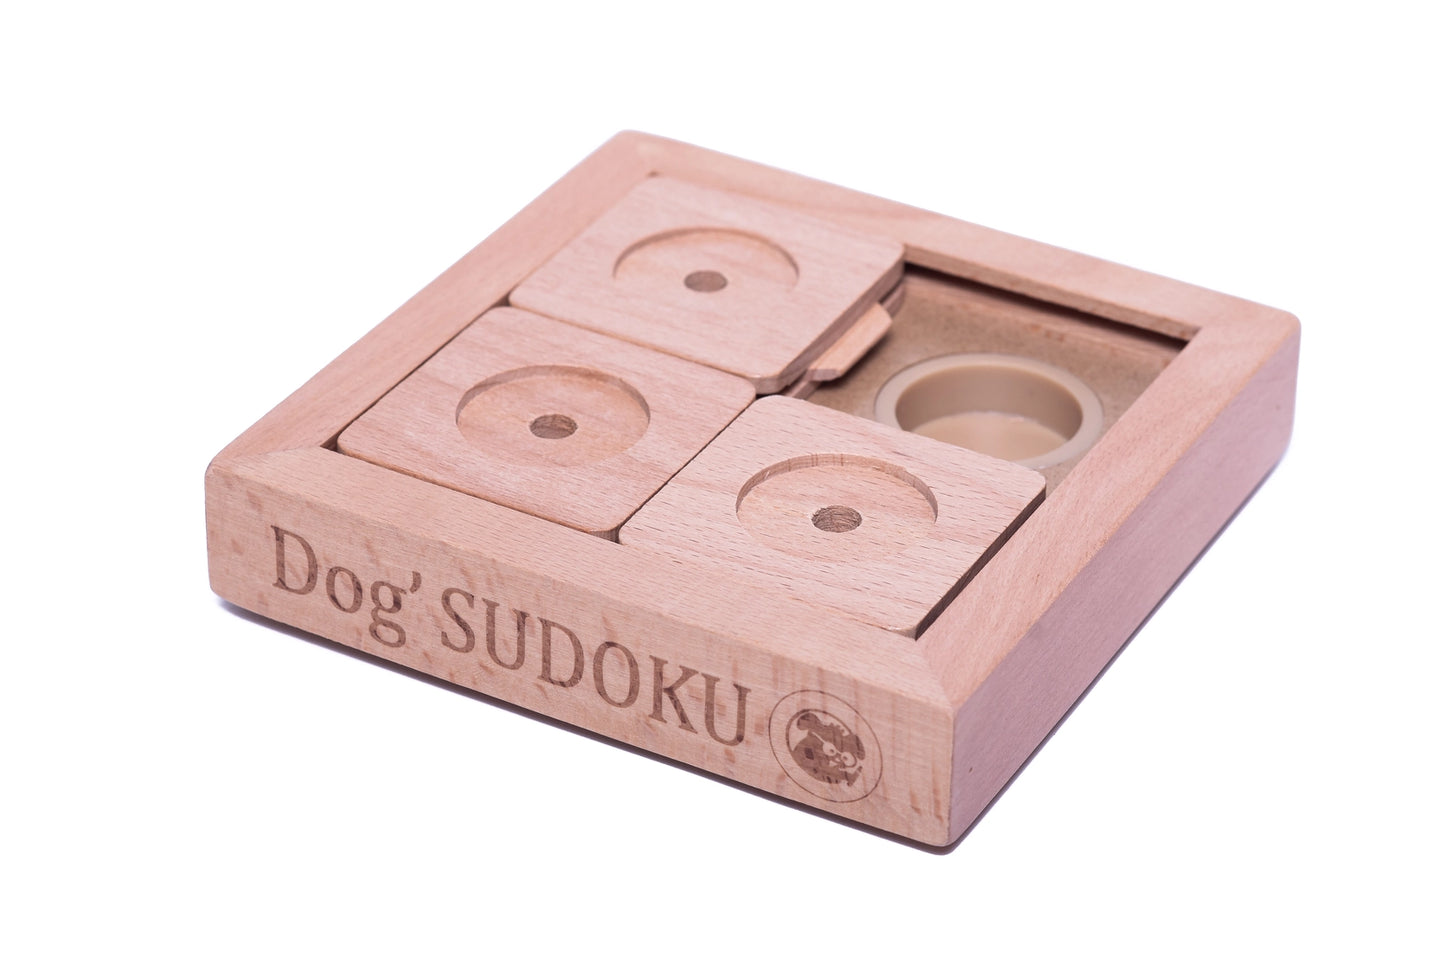 Hjernetrim for hund og katt - Sudoku 3 brikker